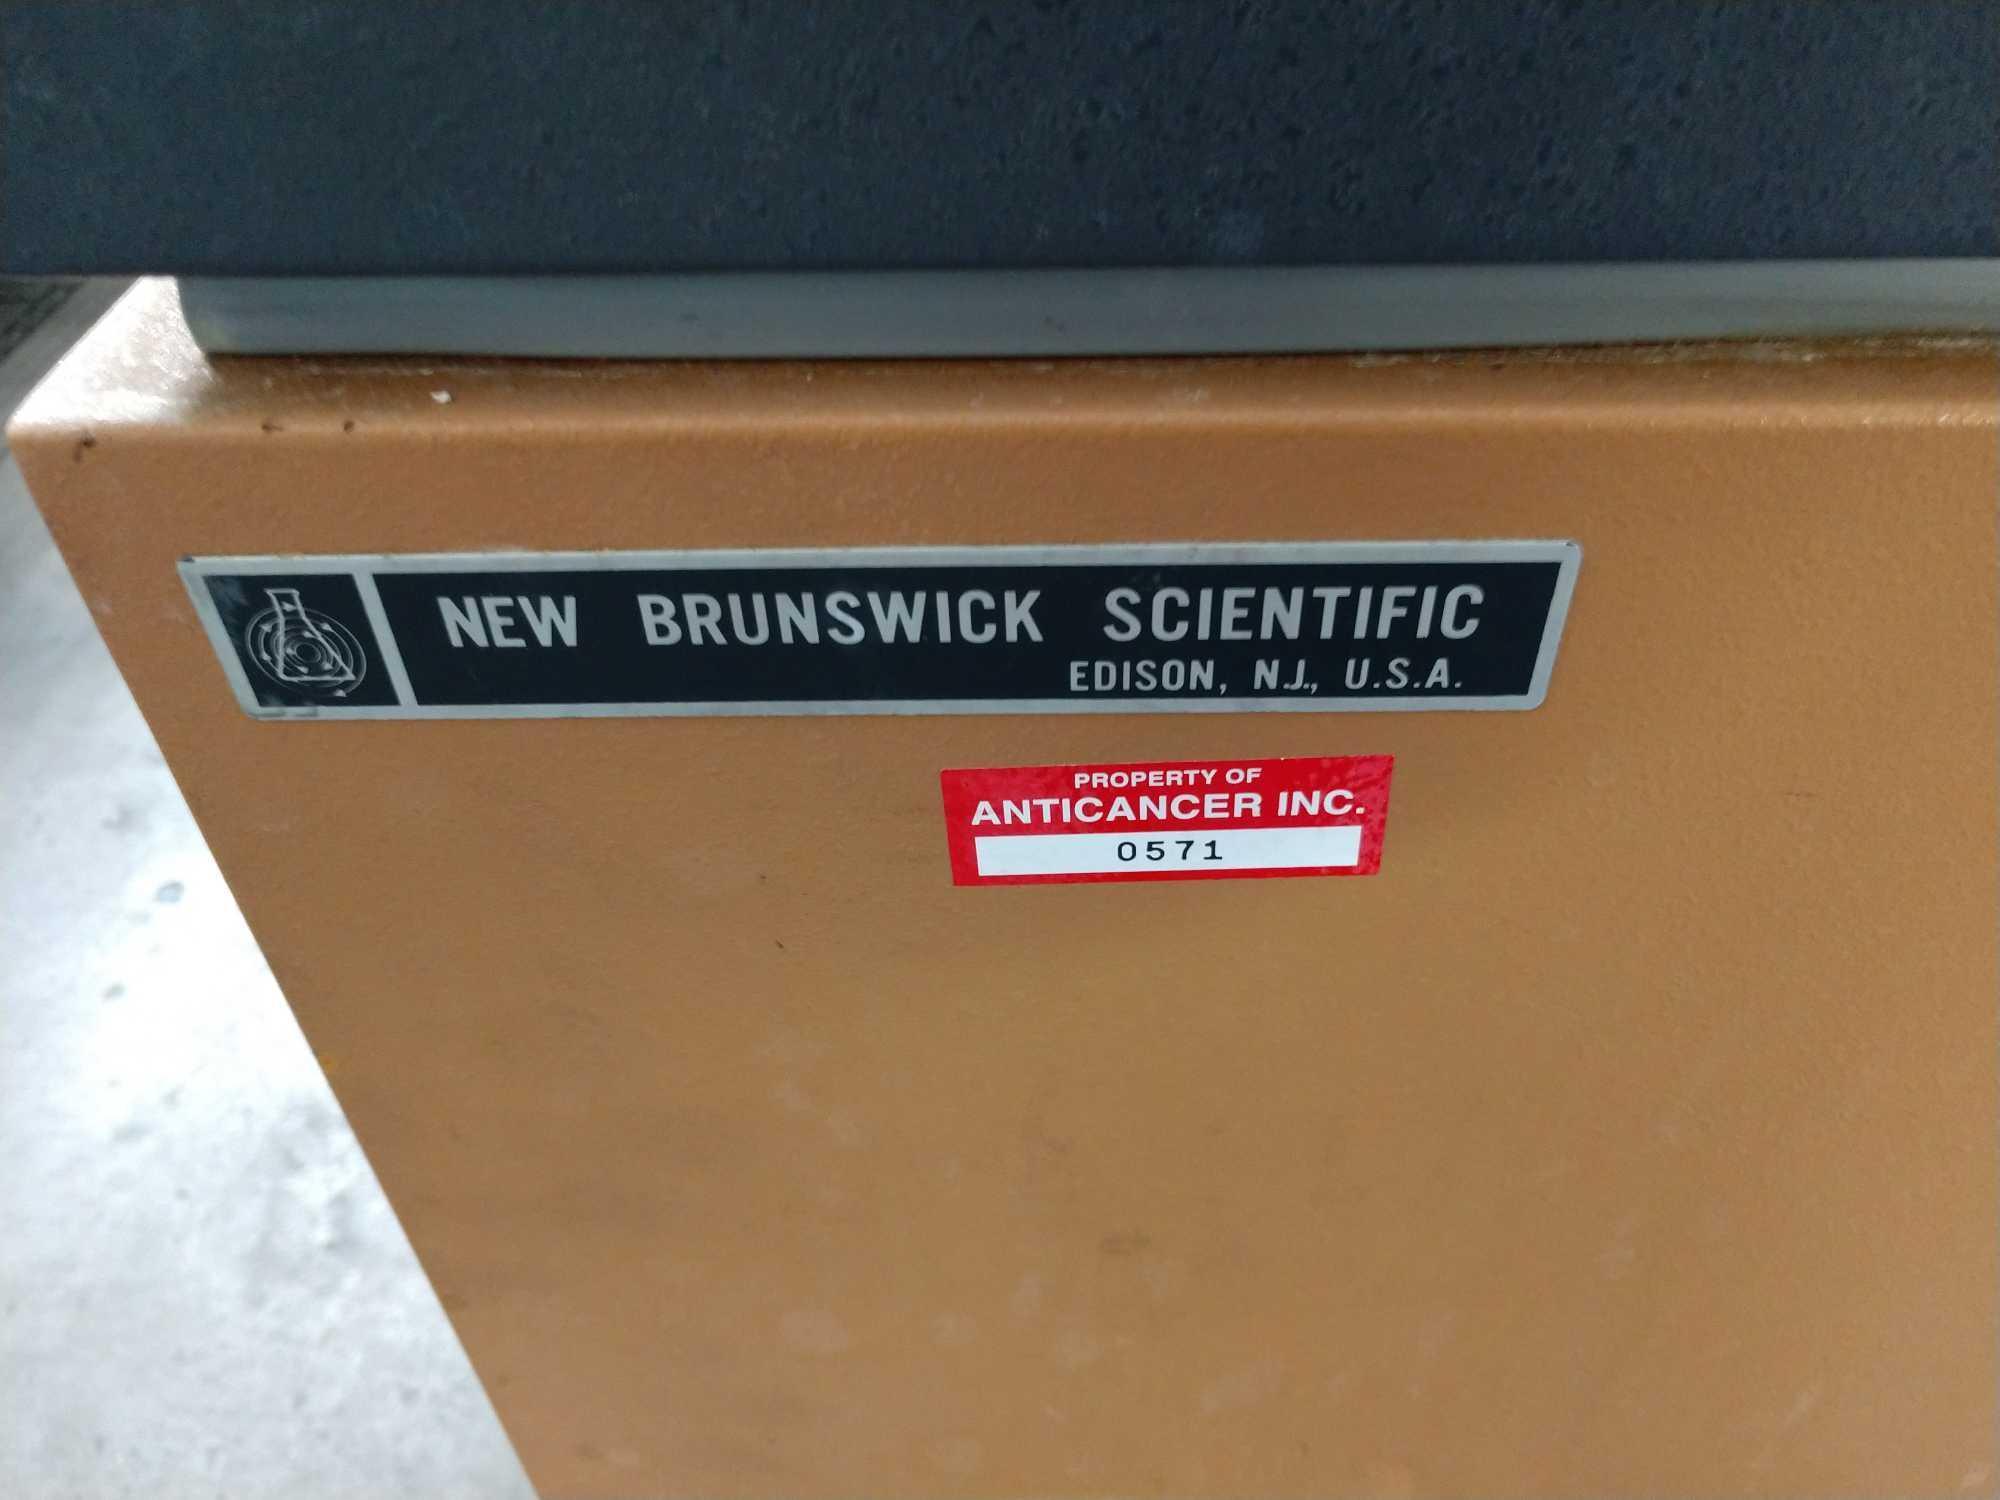 New Brunswick incubator shaker